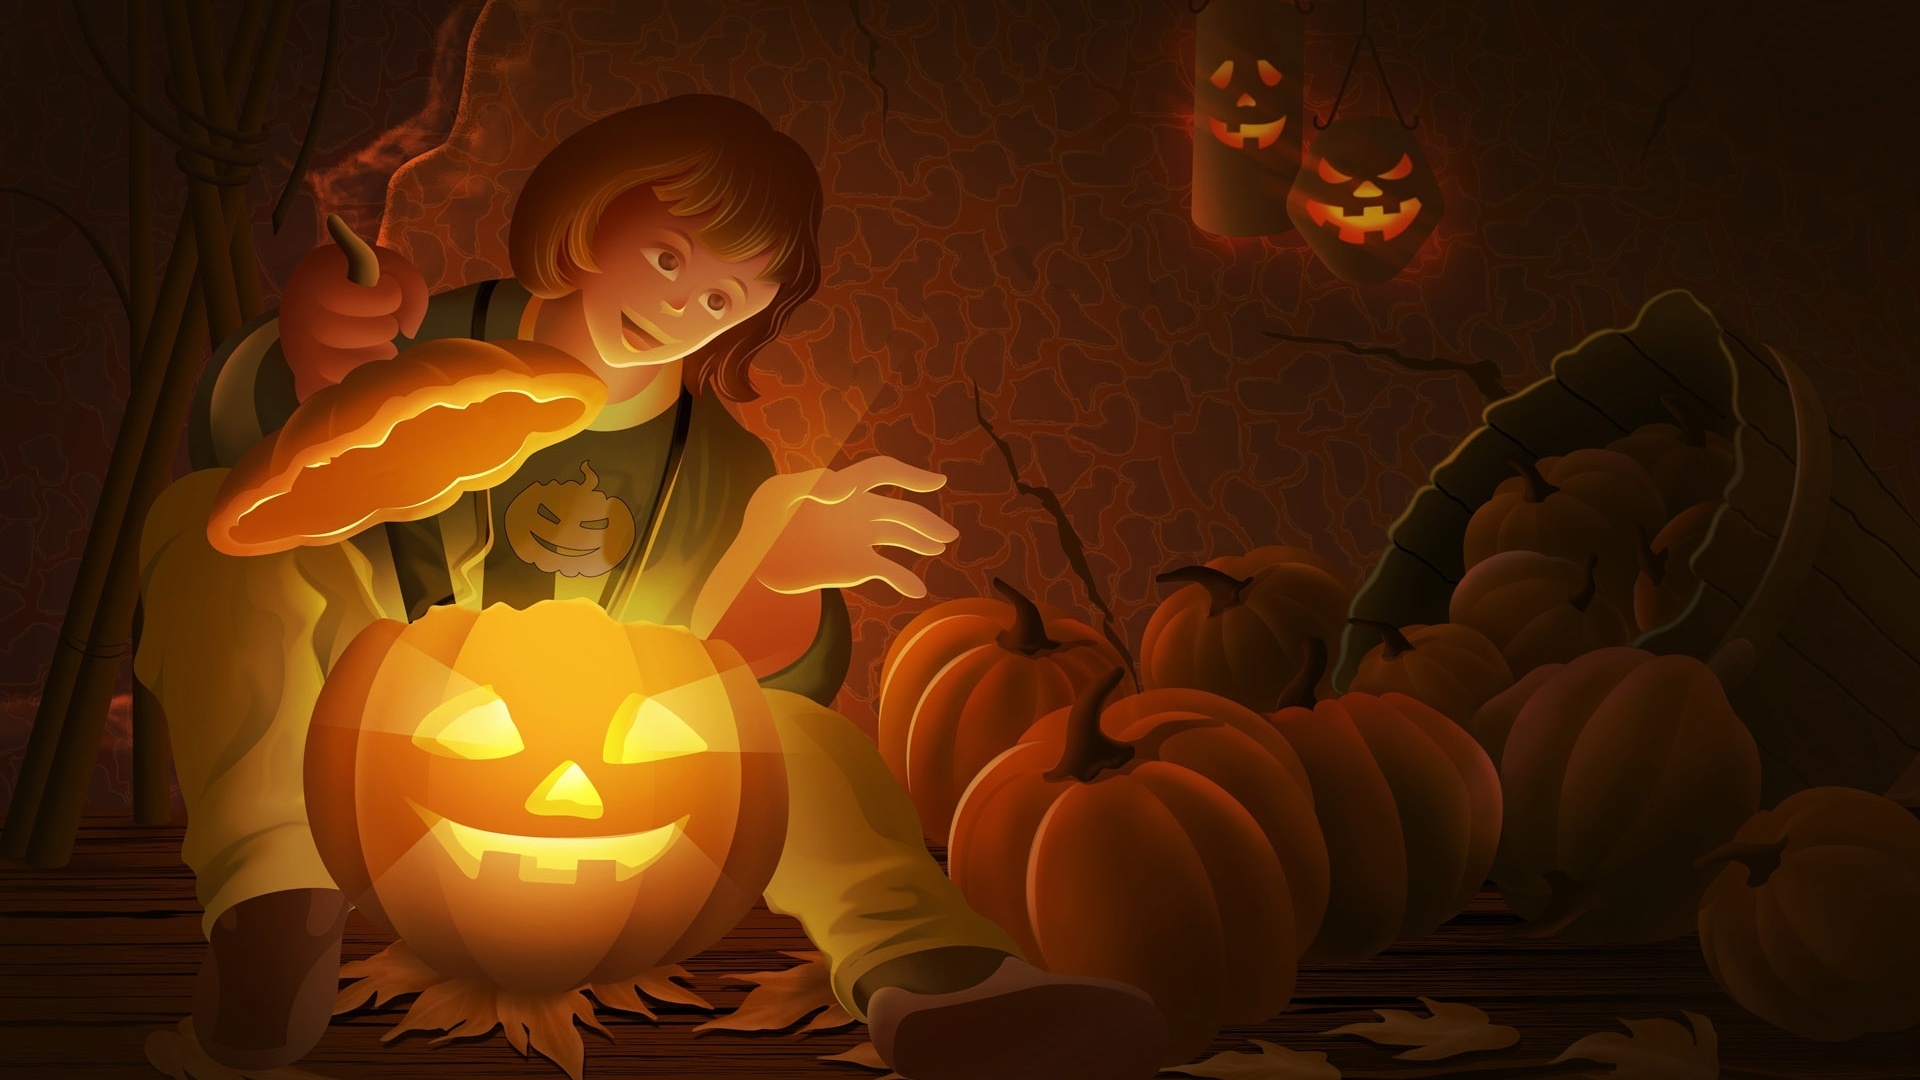 Cool Halloween Pumpkin for 1920 x 1080 HDTV 1080p resolution